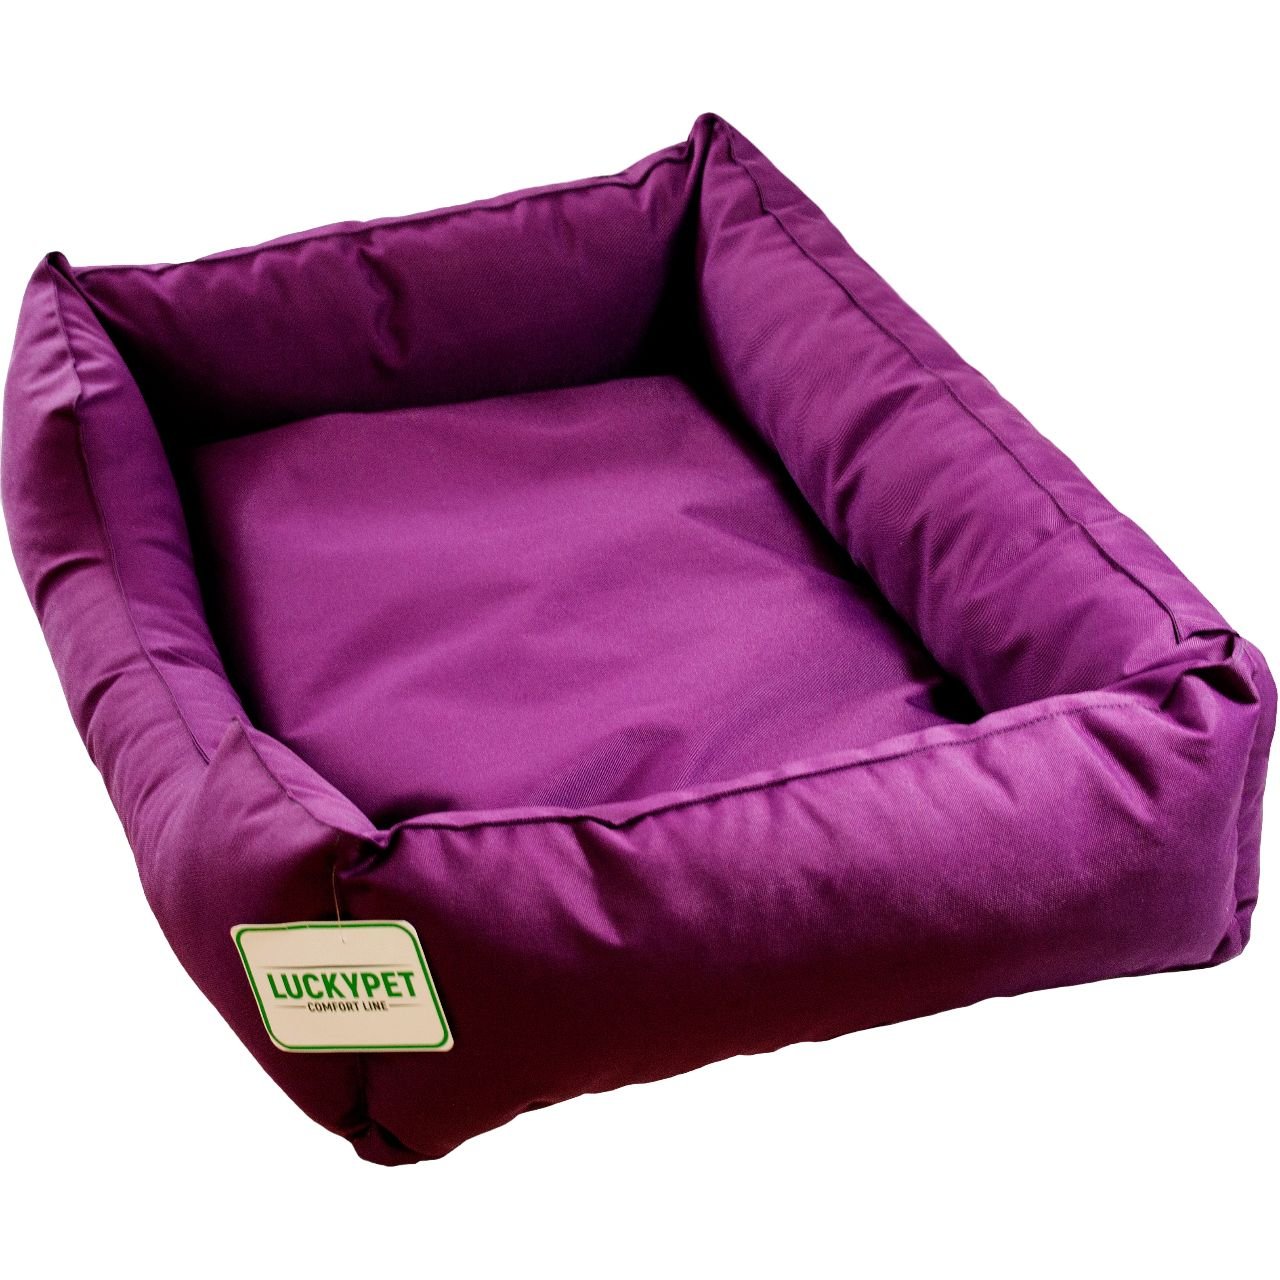 Лежак Lucky Pet Маркиз №4, 60x90x22 см, фиолетовый - фото 1